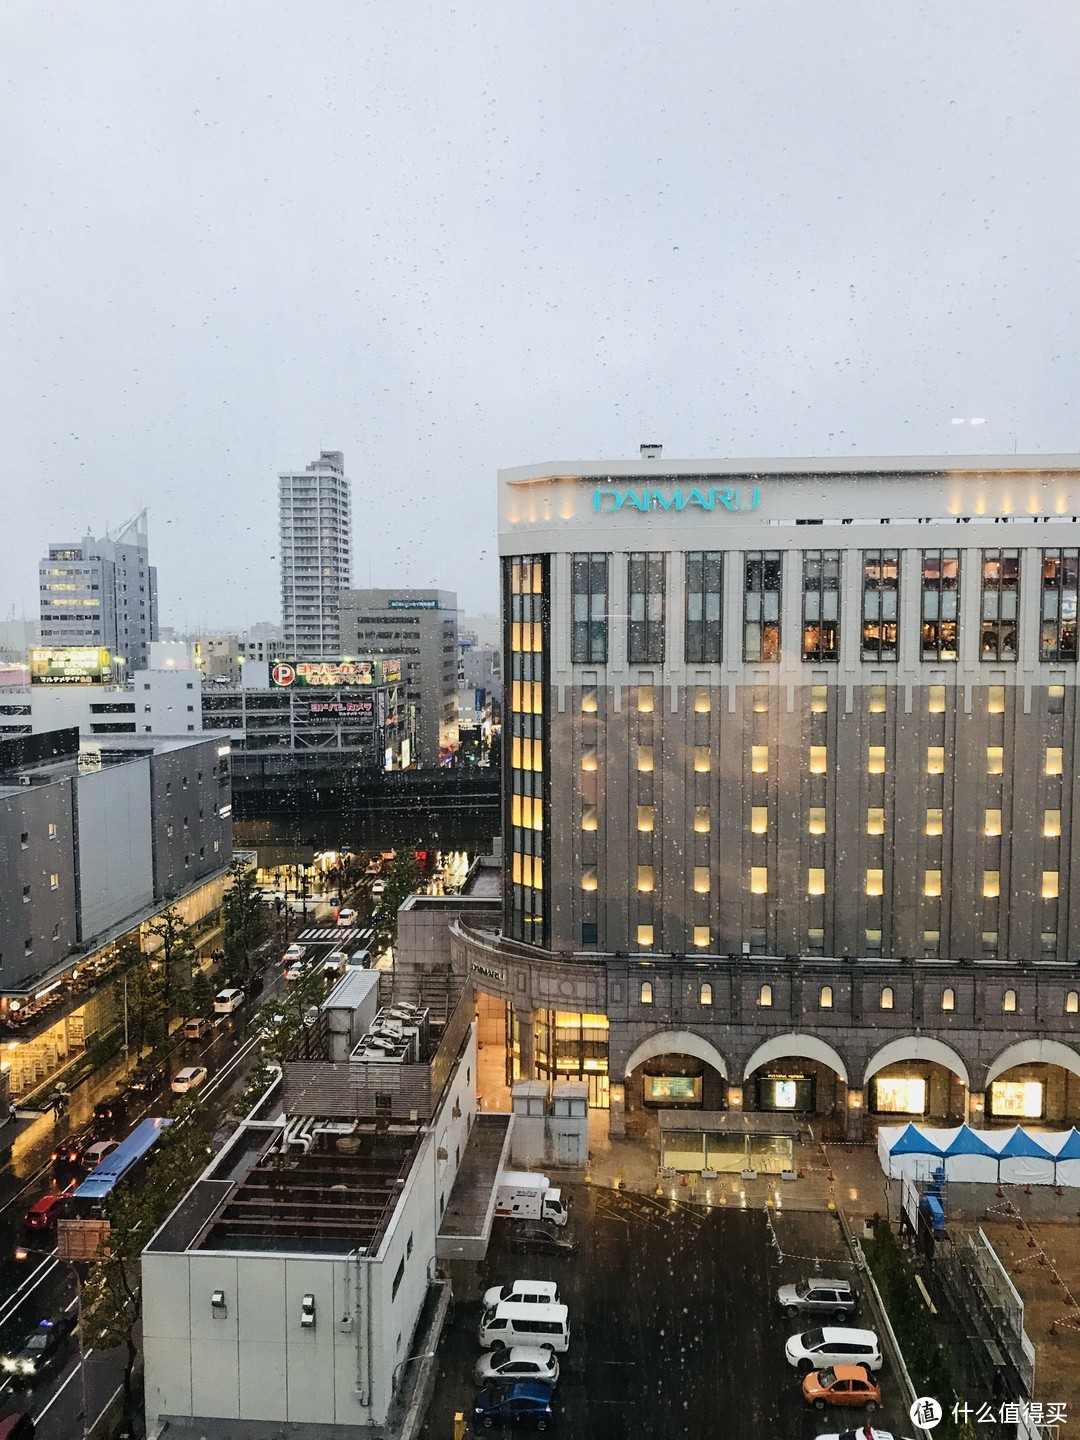 入住酒店，对面的就是大丸，右手边就是札幌车站，地理位置还是不错的，就是酒店房间太小，转身都感觉有点麻烦。